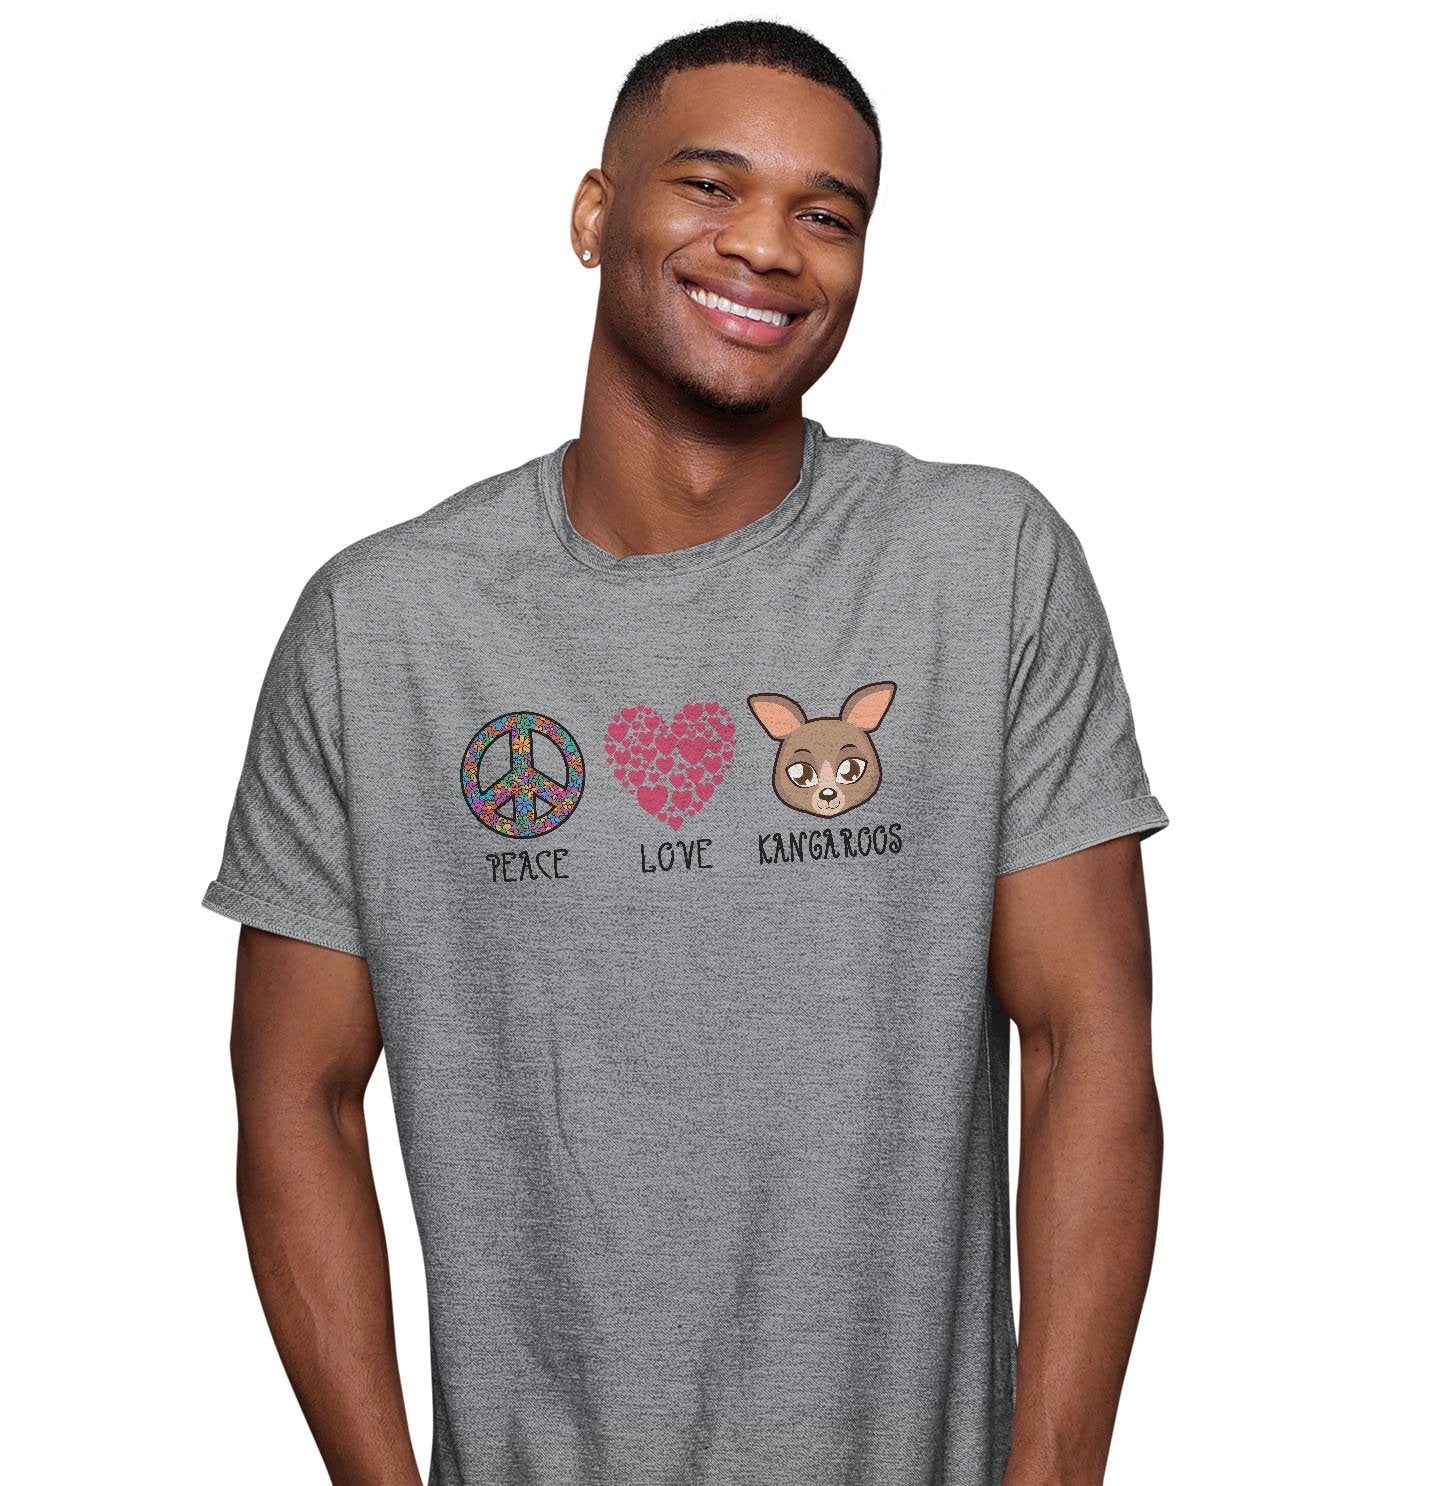 Peace Love Kangaroos - Adult Unisex T-Shirt